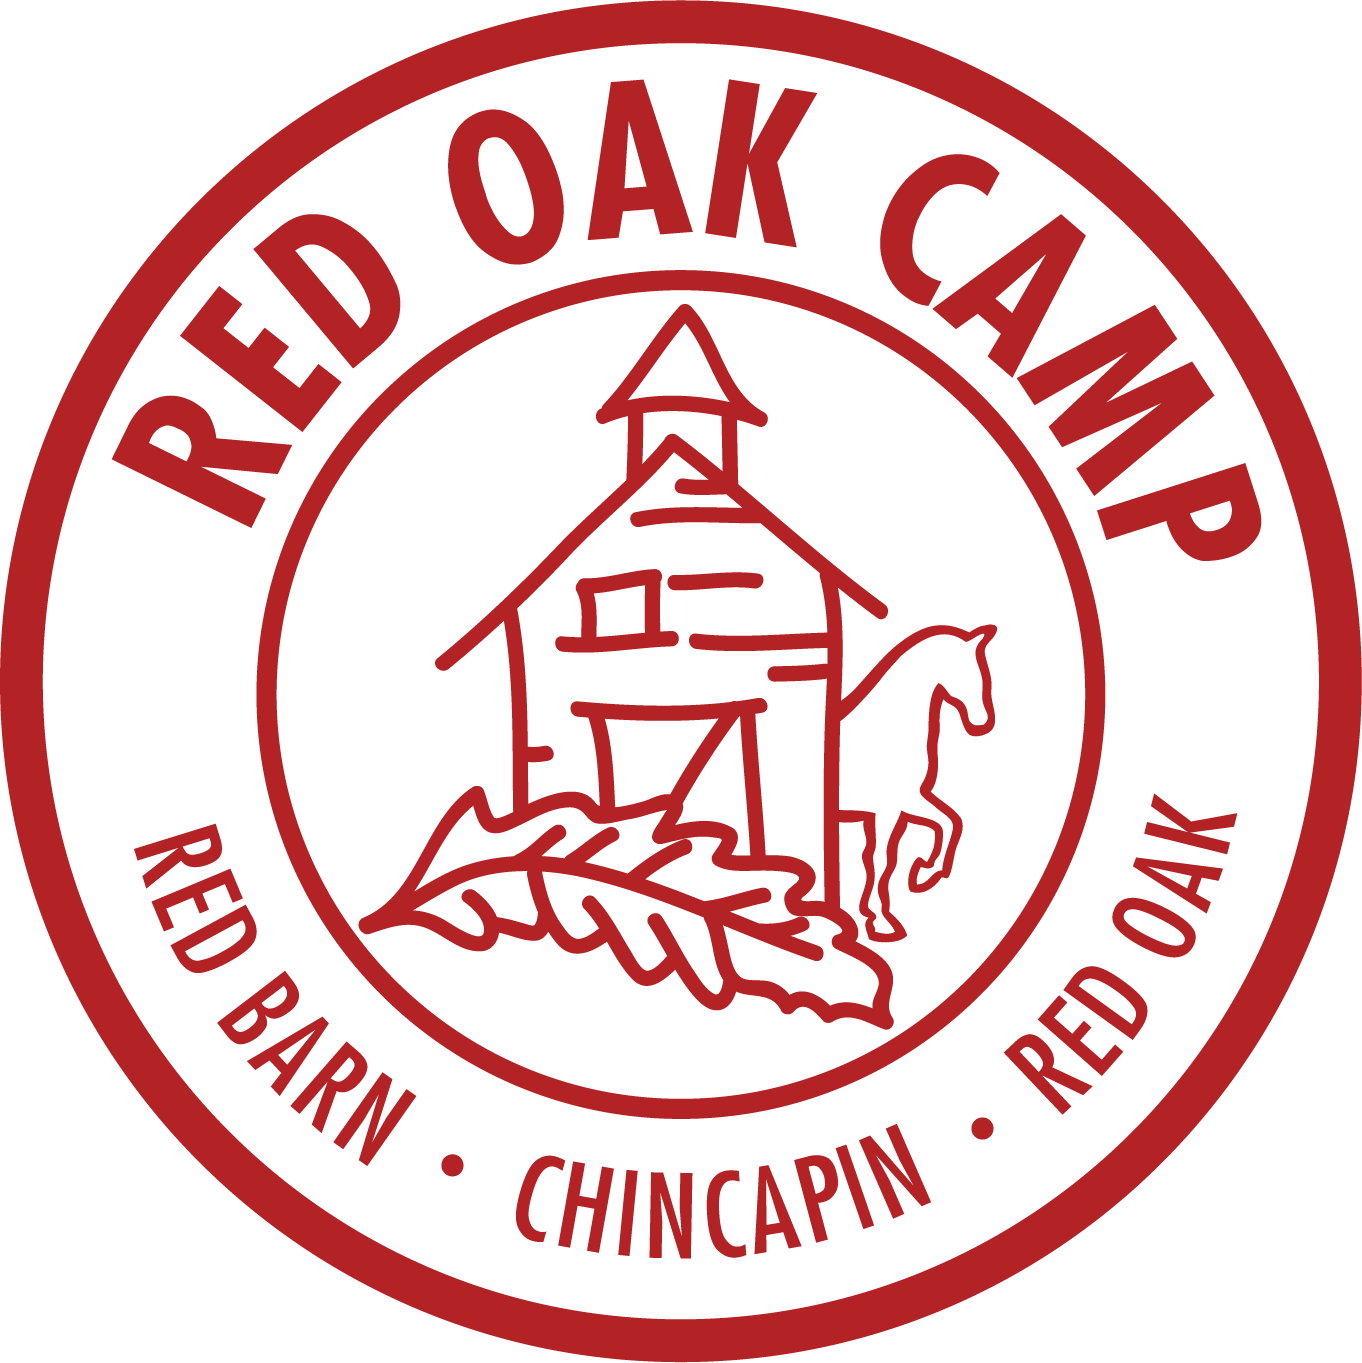 Red Oak Camp